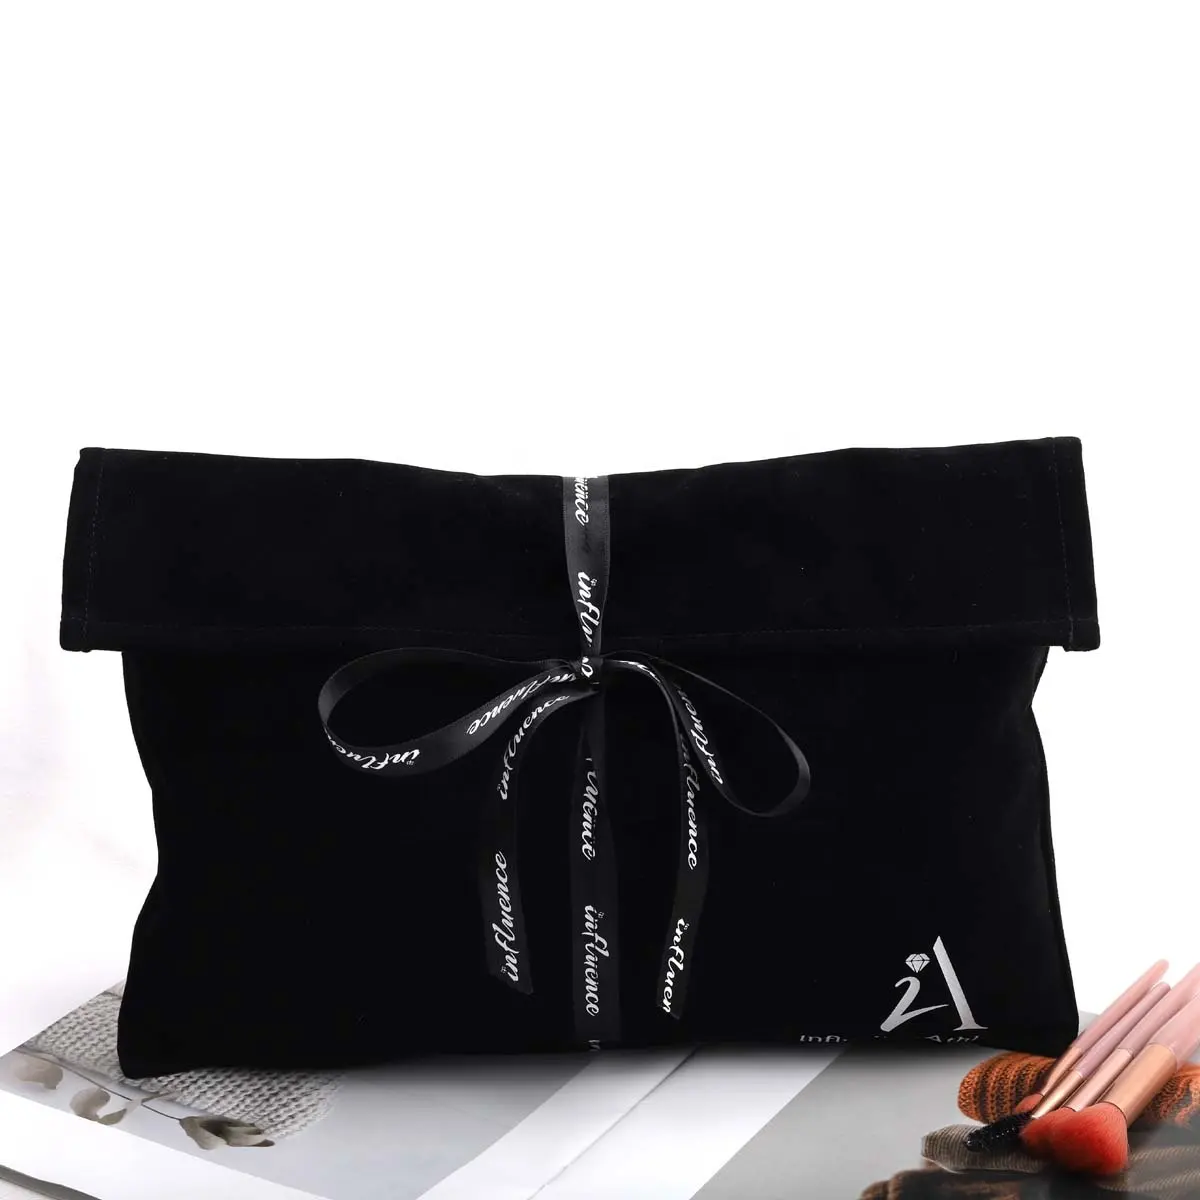 Özel Logo şerit baskı siyah kadife zarf toz torbası cüzdan çanta için kullanımlık hediye takı toz Flap kadife kılıfı